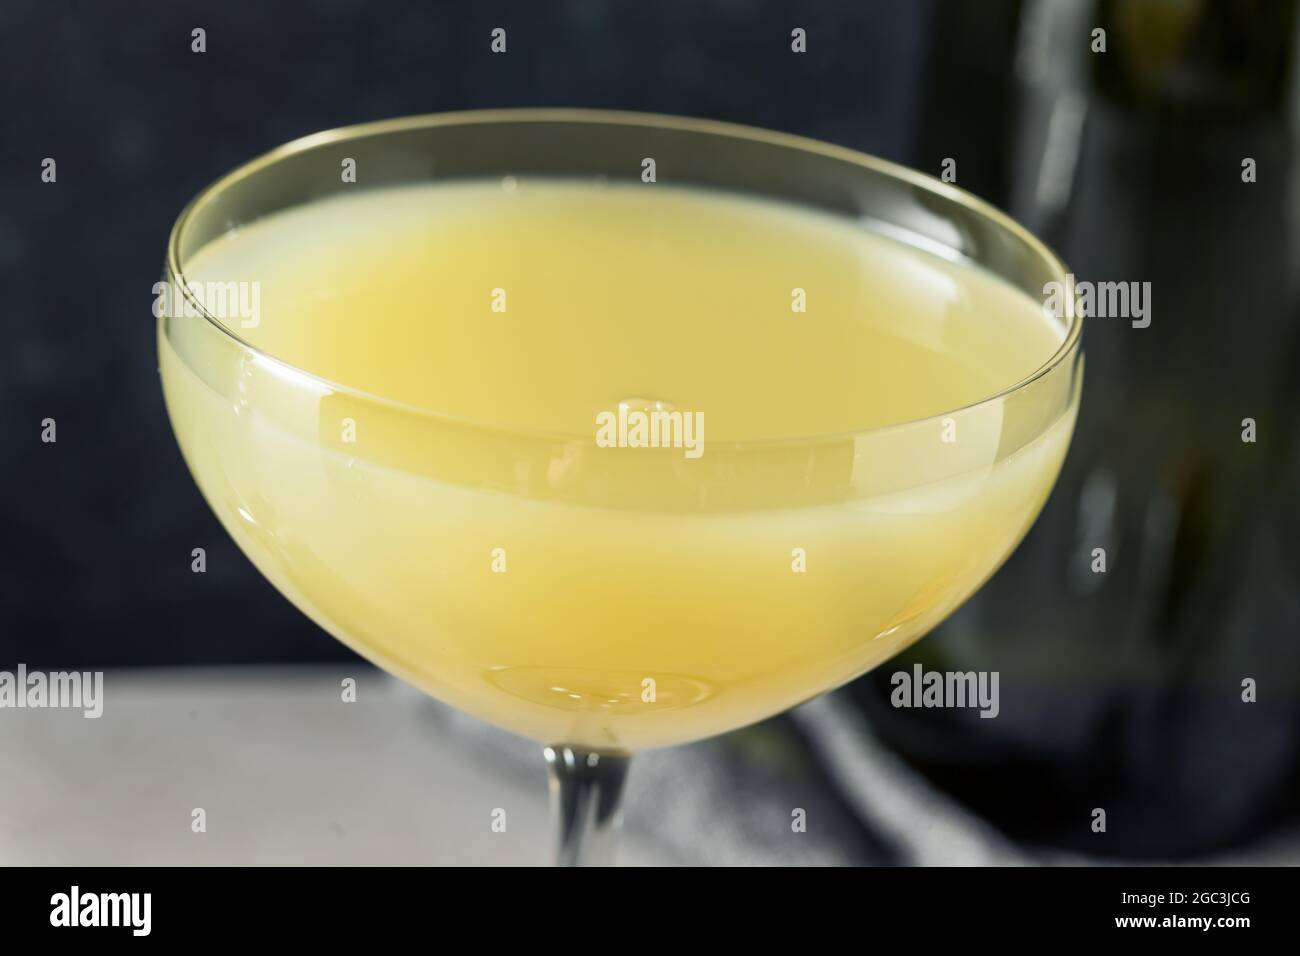 Boosty Absinthe Death en el cóctel de la tarde con champán Foto de stock